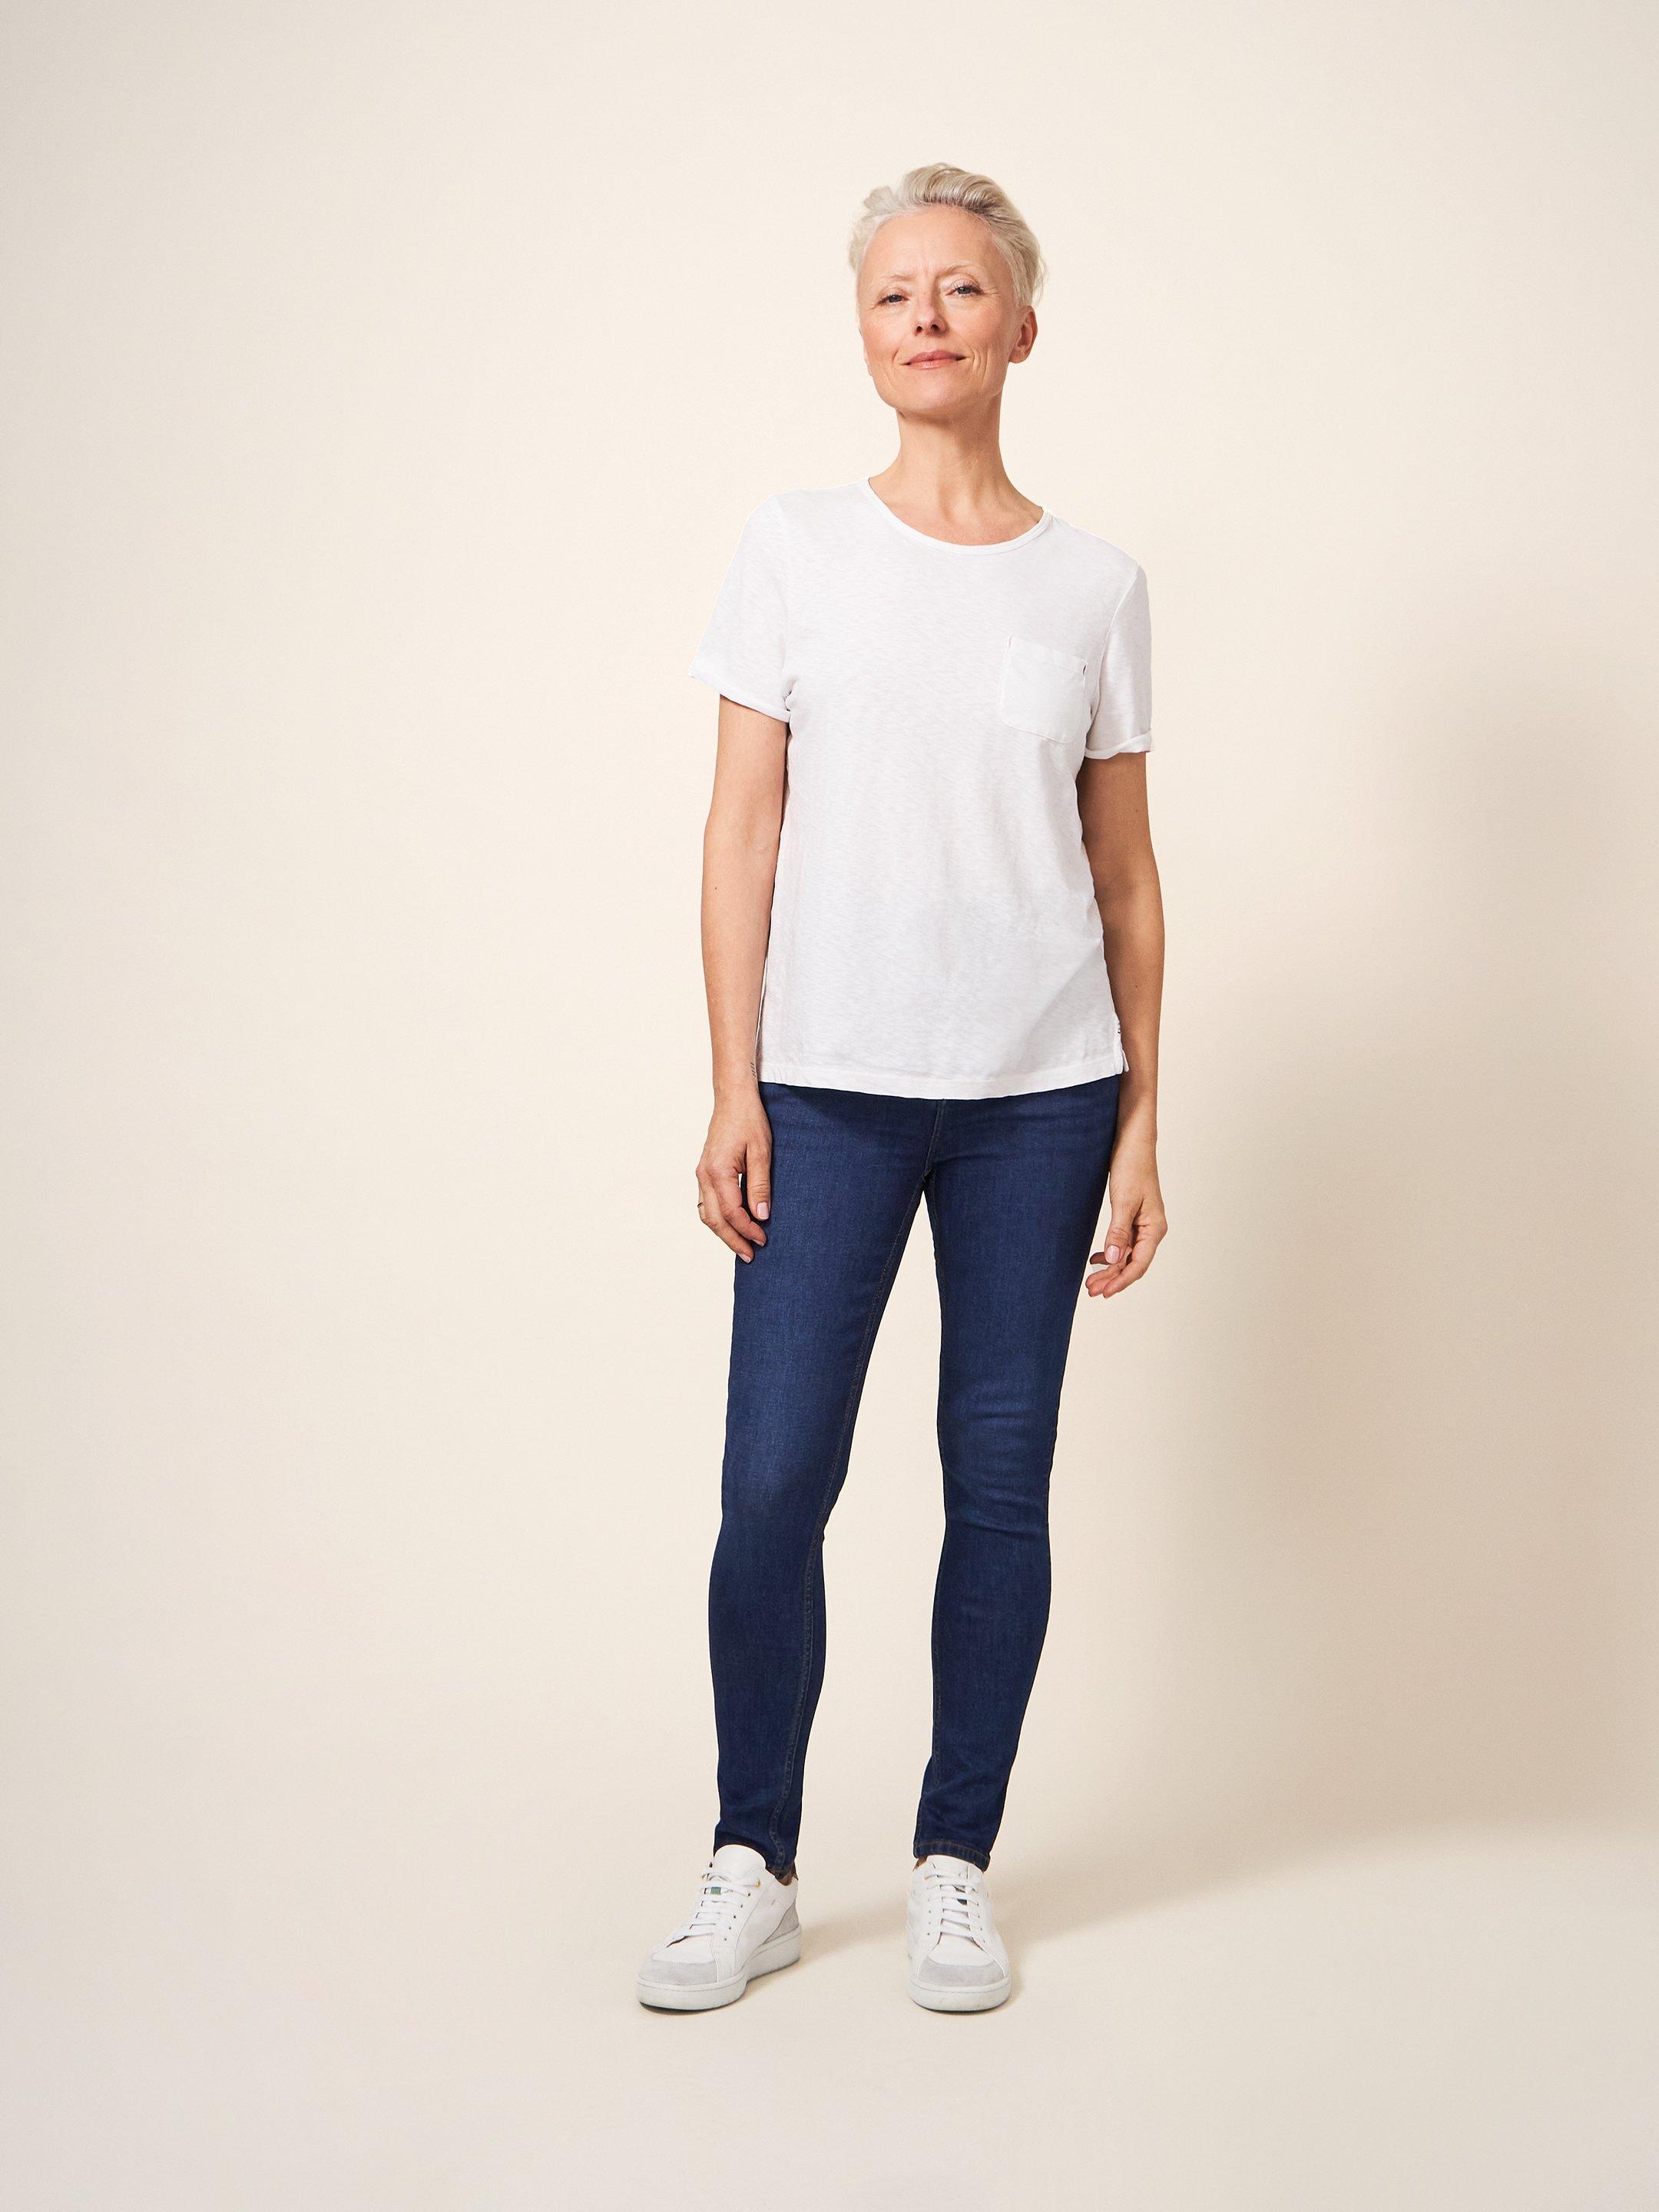 Amelia Skinny Jeans in MID DENIM - MODEL FRONT